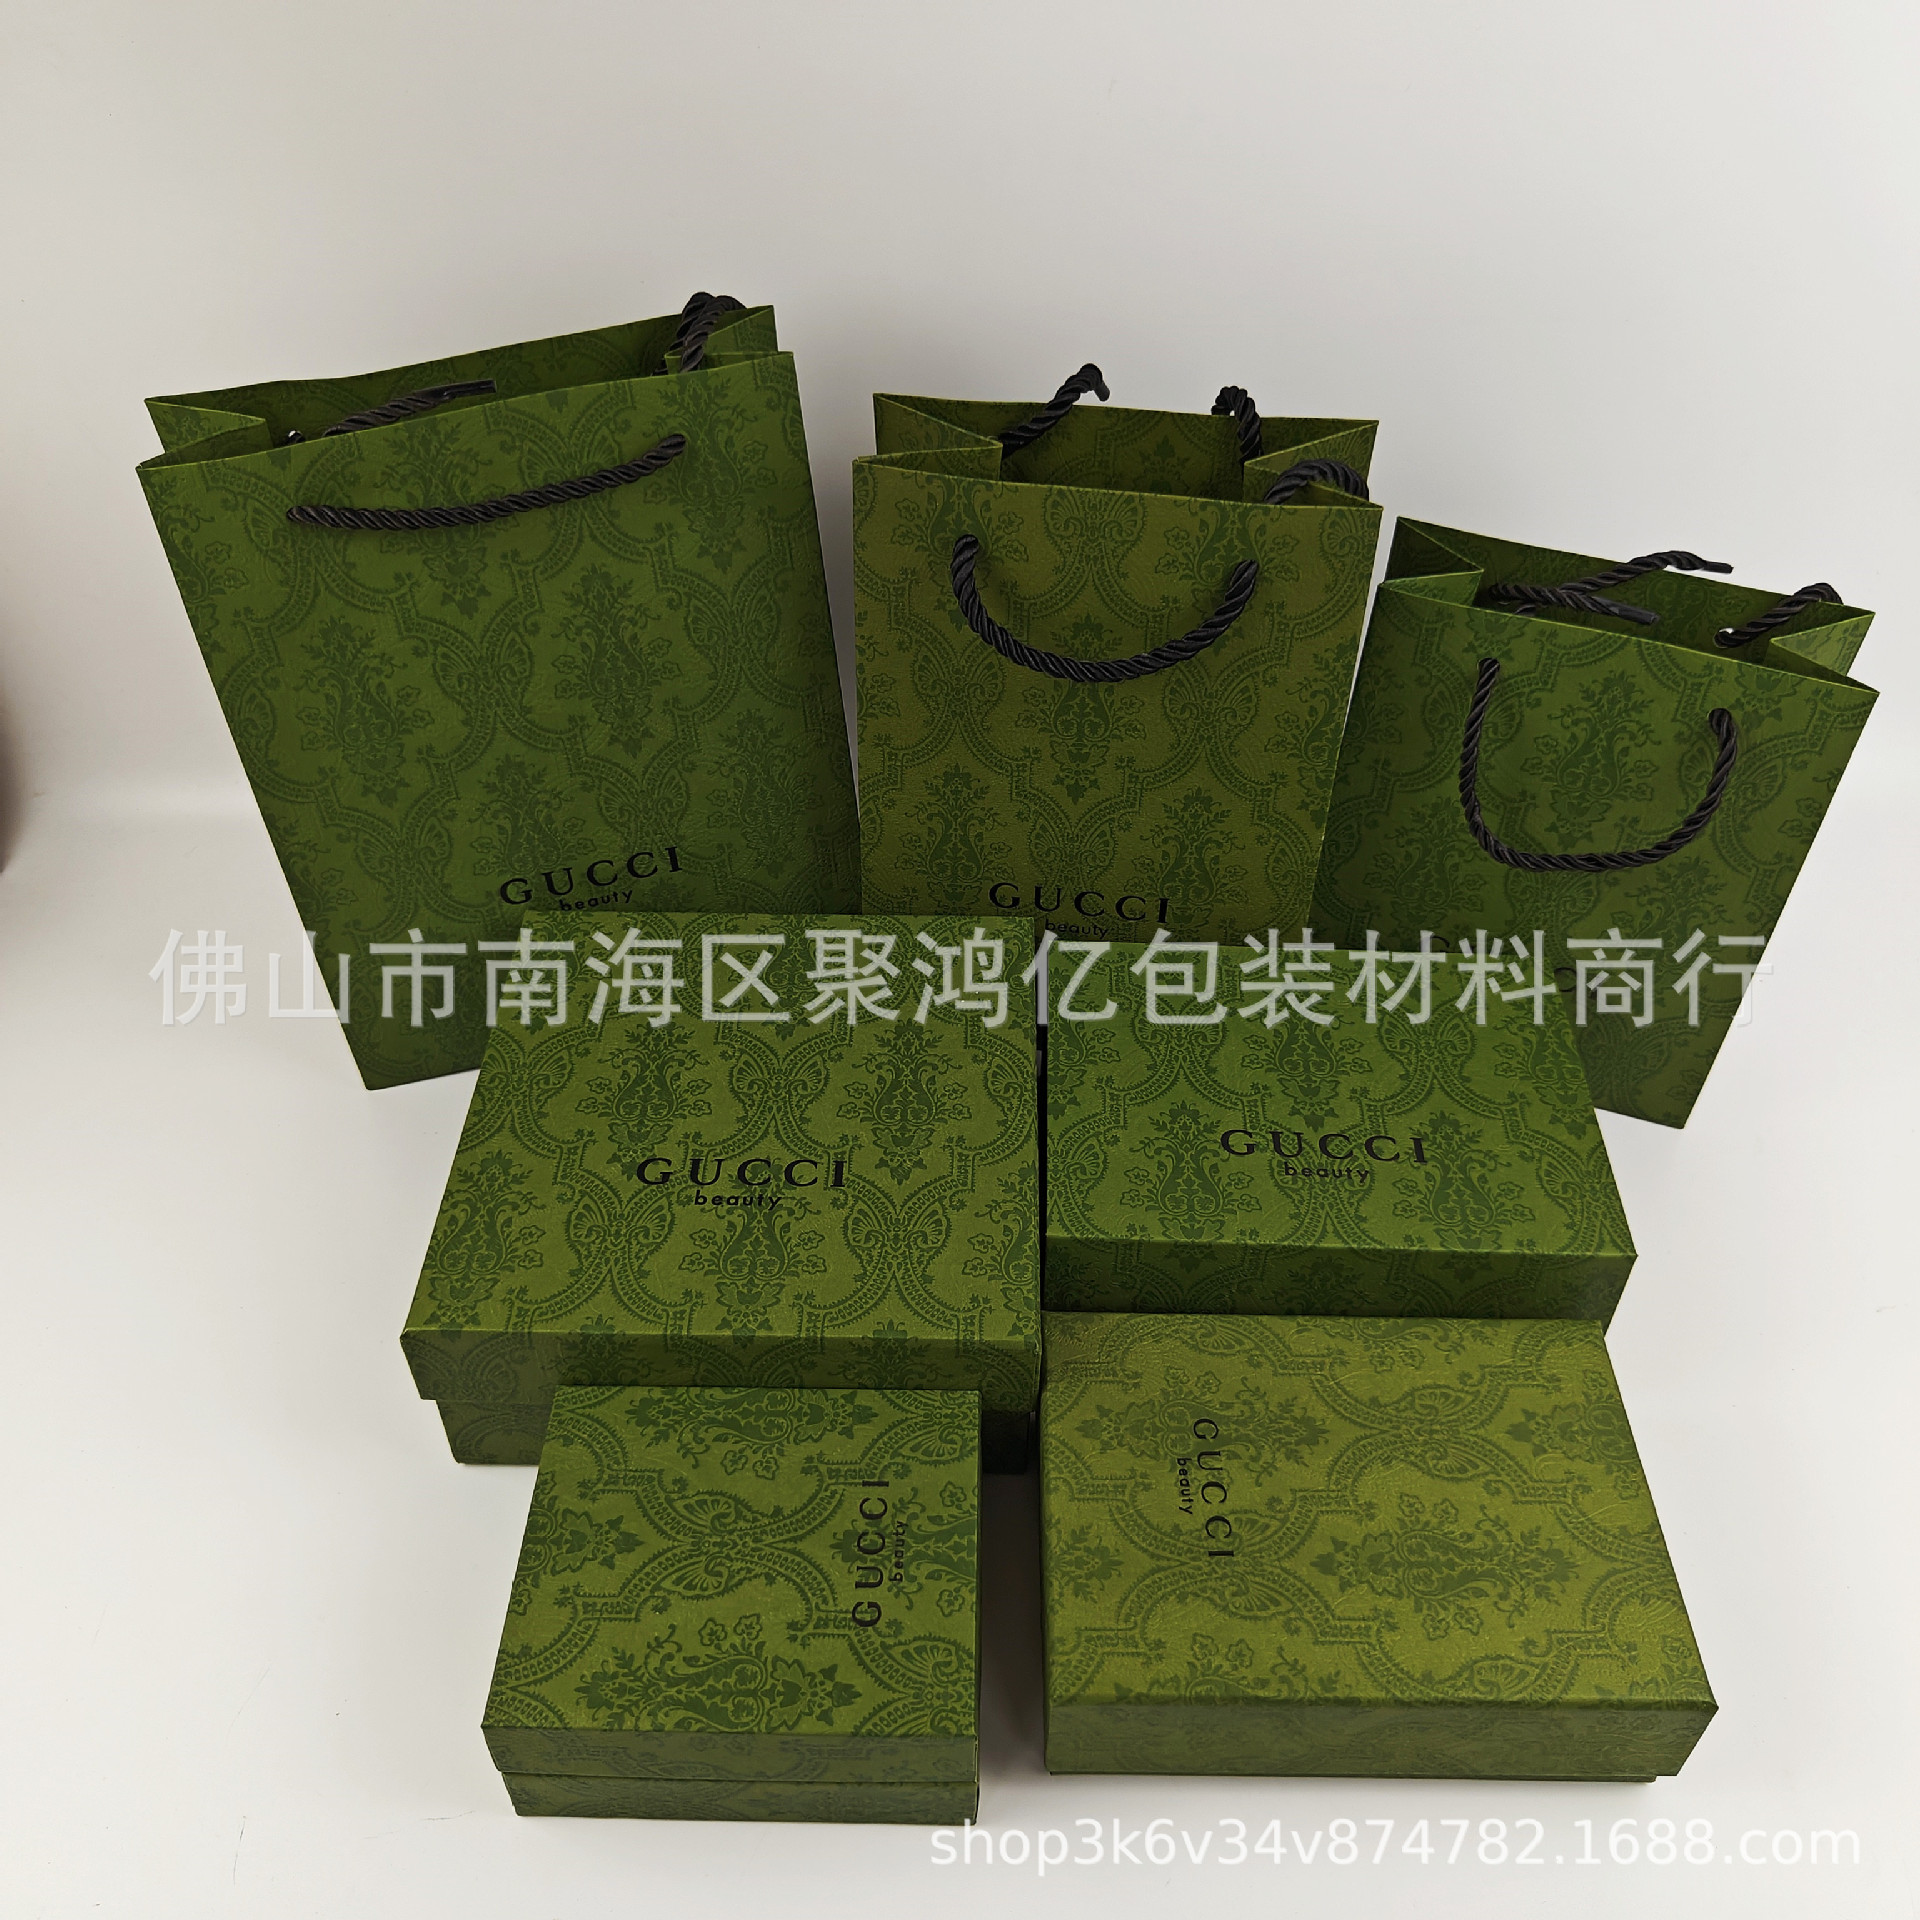 原版古家CCI礼品包装盒 古绿色口红香水手提袋礼品盒化妆品包装